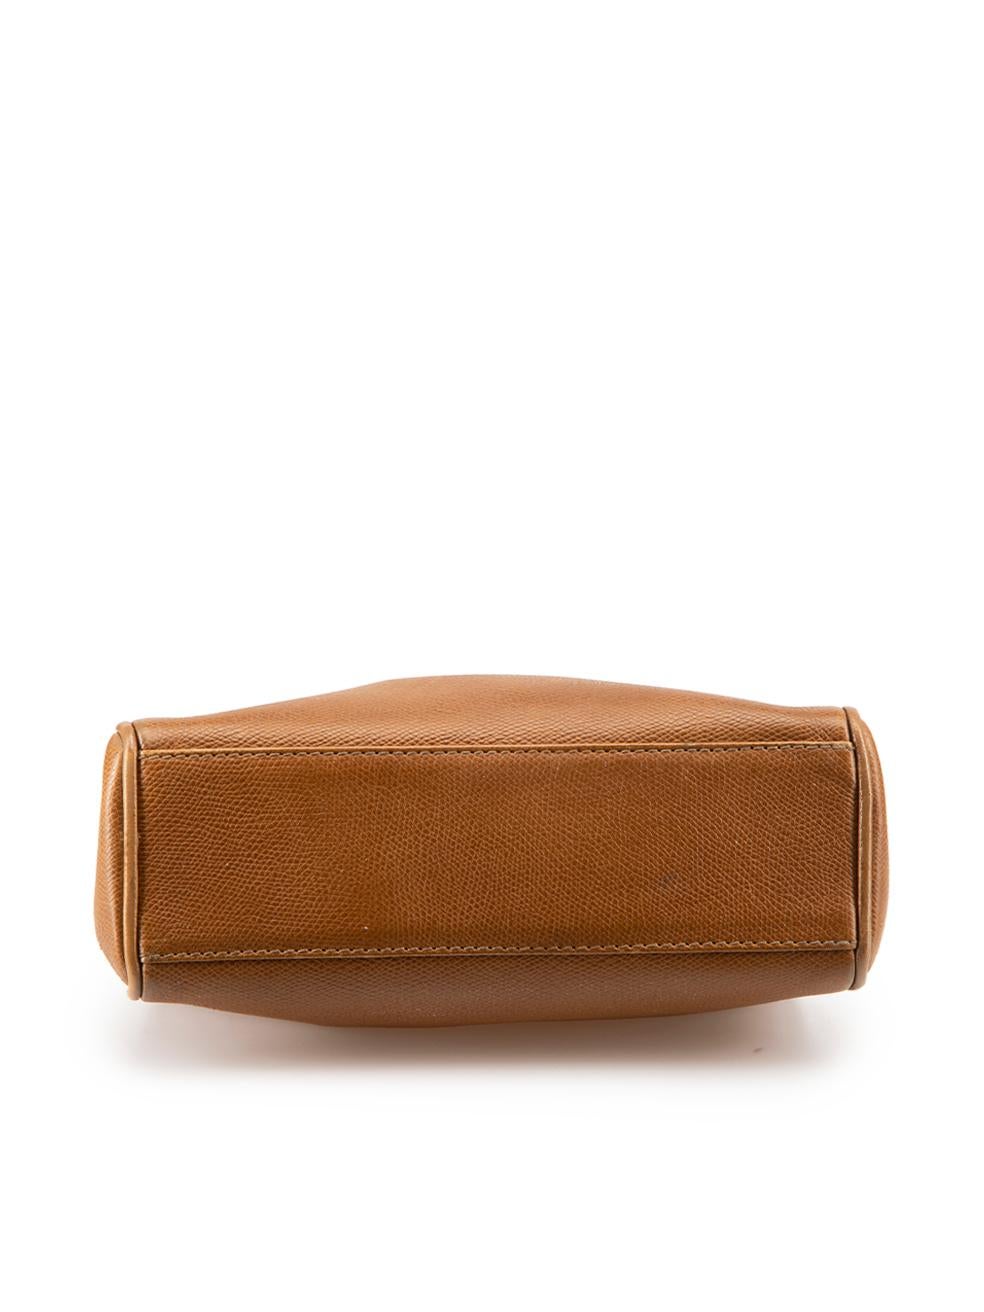 Women's Jil Sander Brown Leather Top Handle Bag